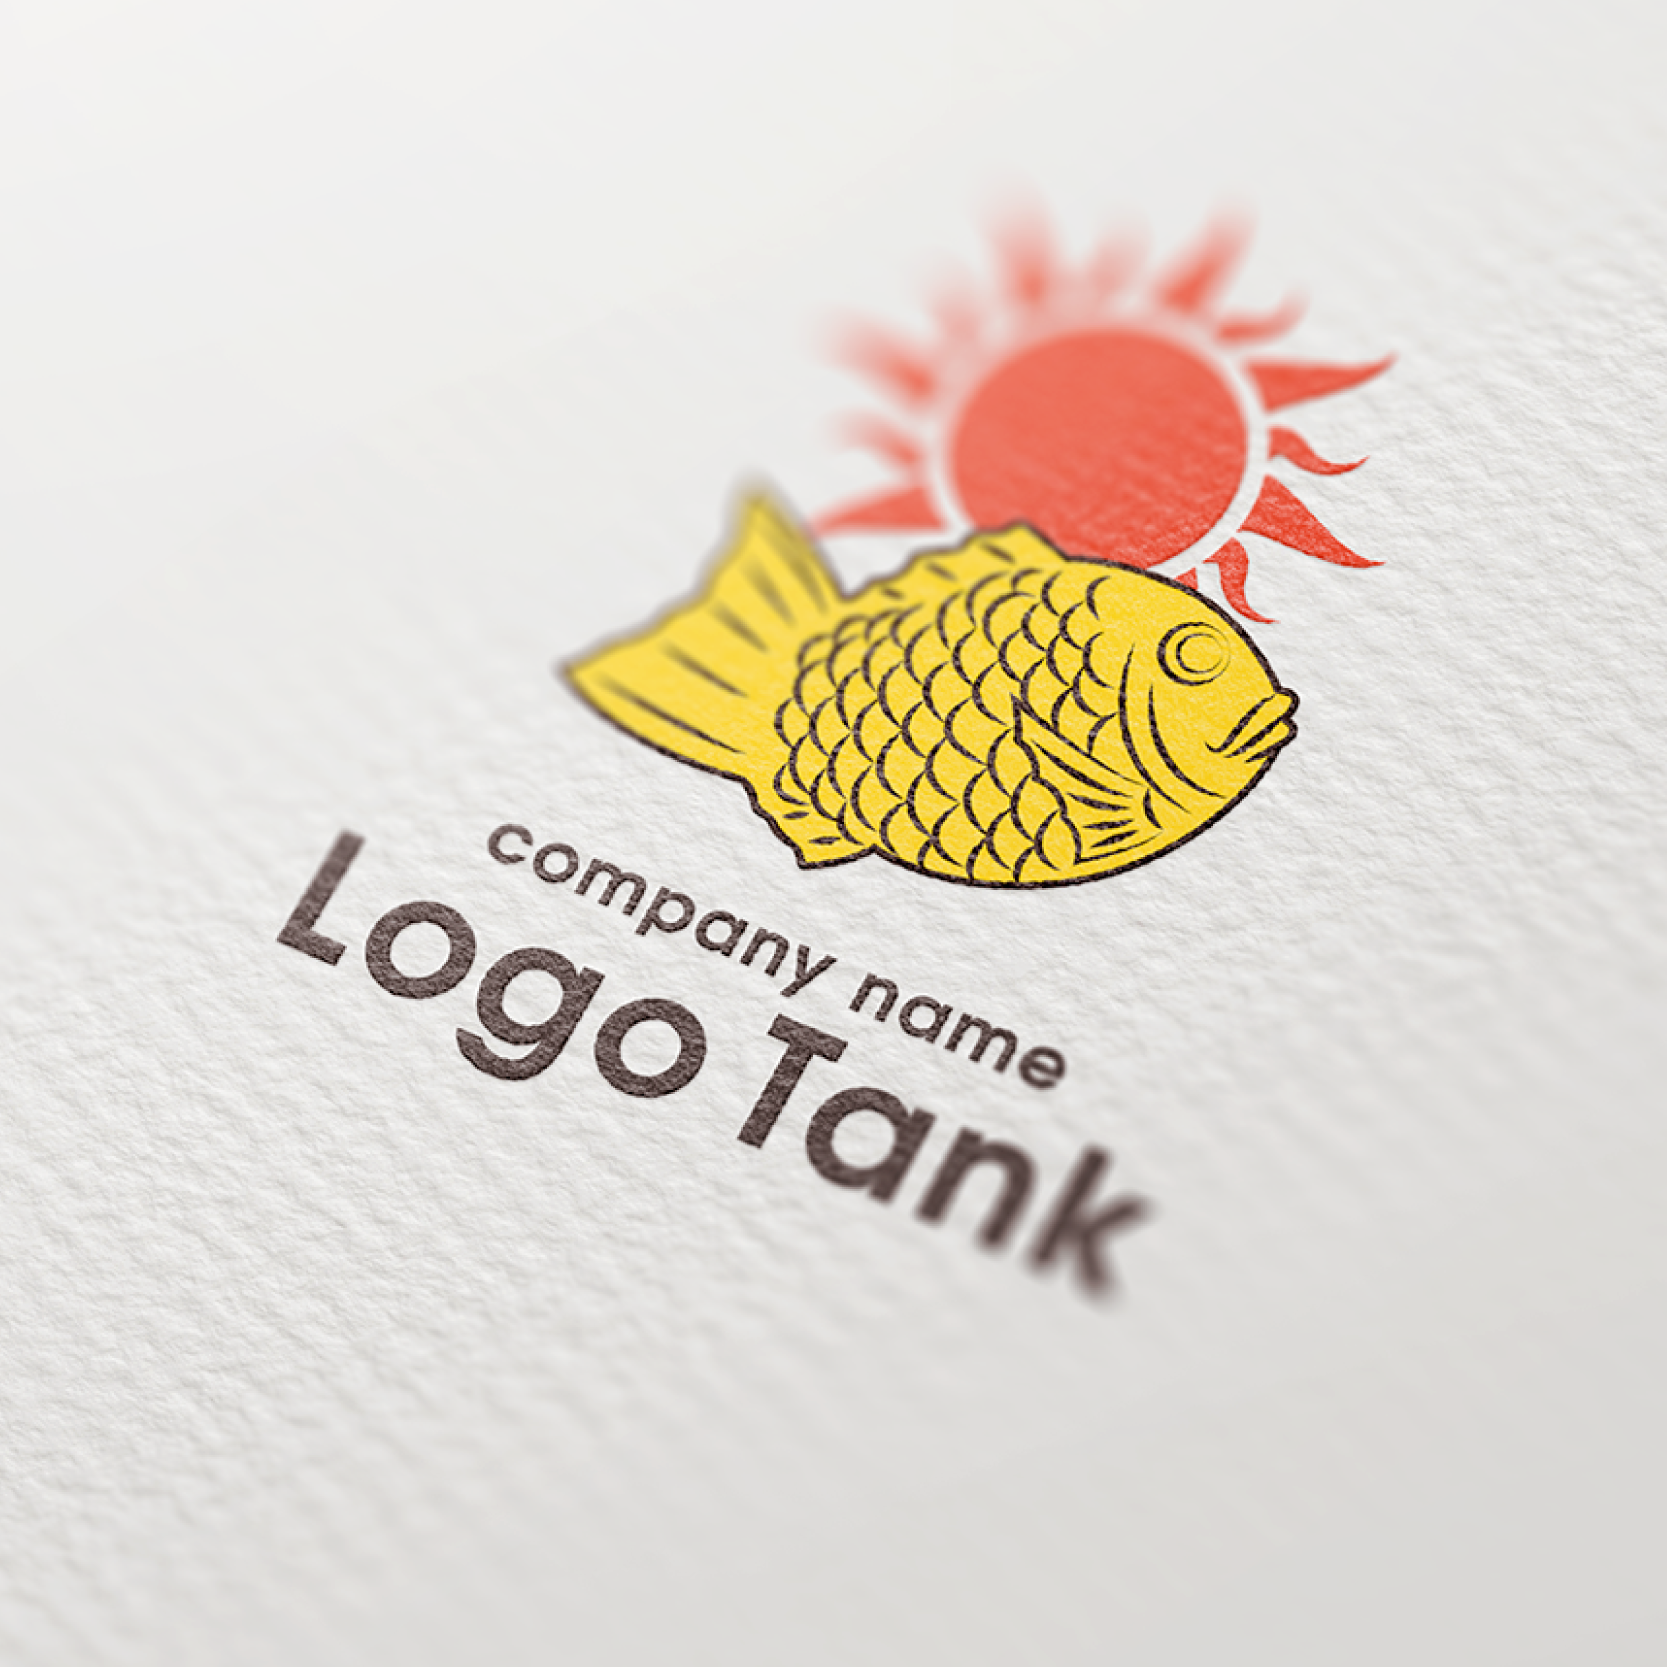 太陽とたい焼きのロゴ 太陽 / スイーツ /,ロゴタンク,ロゴ,ロゴマーク,作成,制作